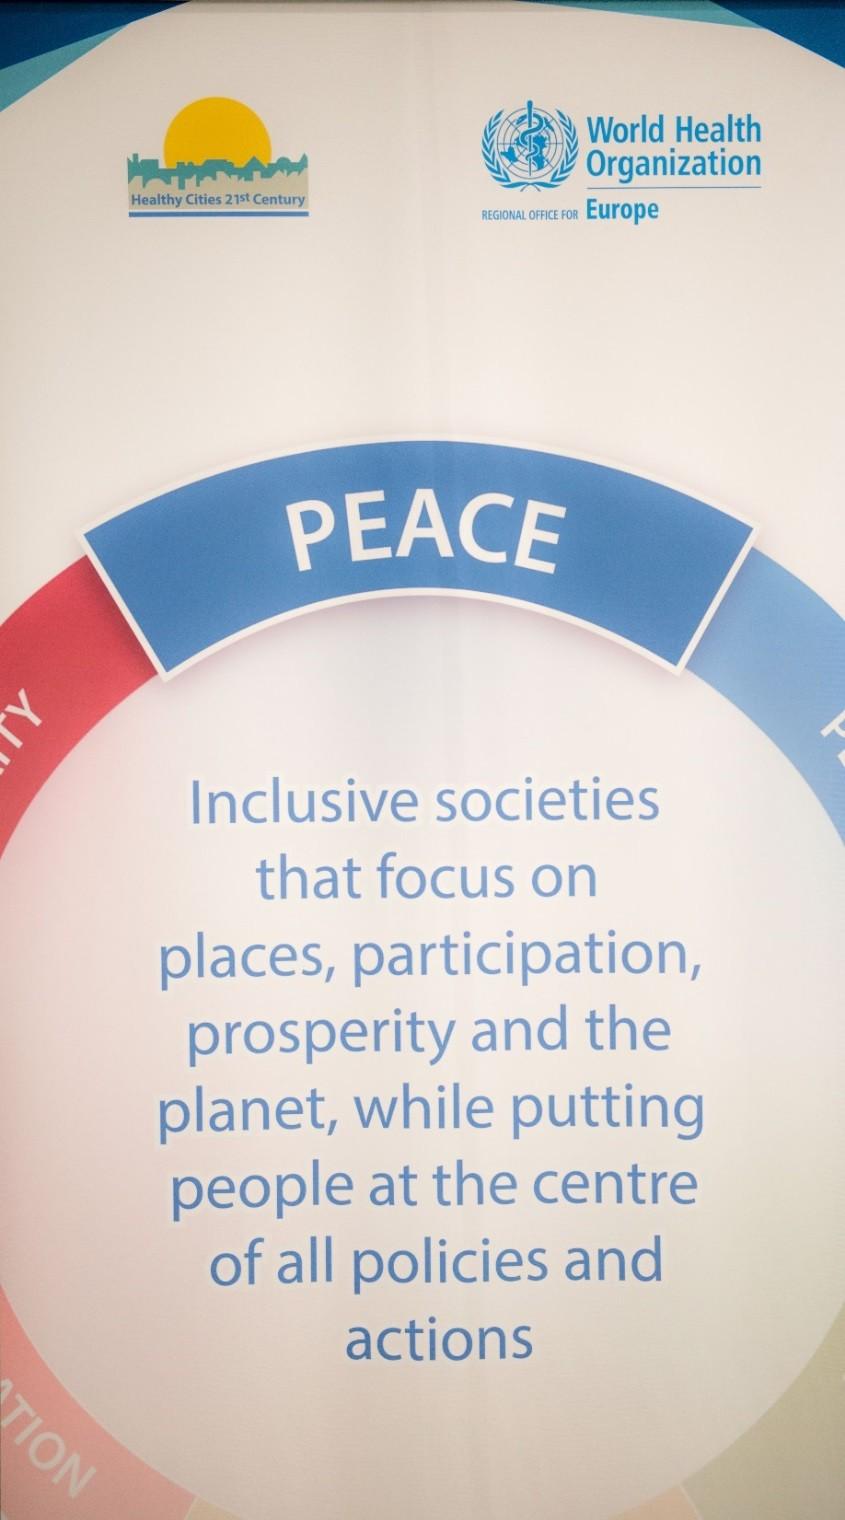 Ειρήνη Μια υγιής πόλη προάγει και διατηρεί την ειρήνη σε όλες τις δράσεις, τις πολιτικές και τα συστήματα της.